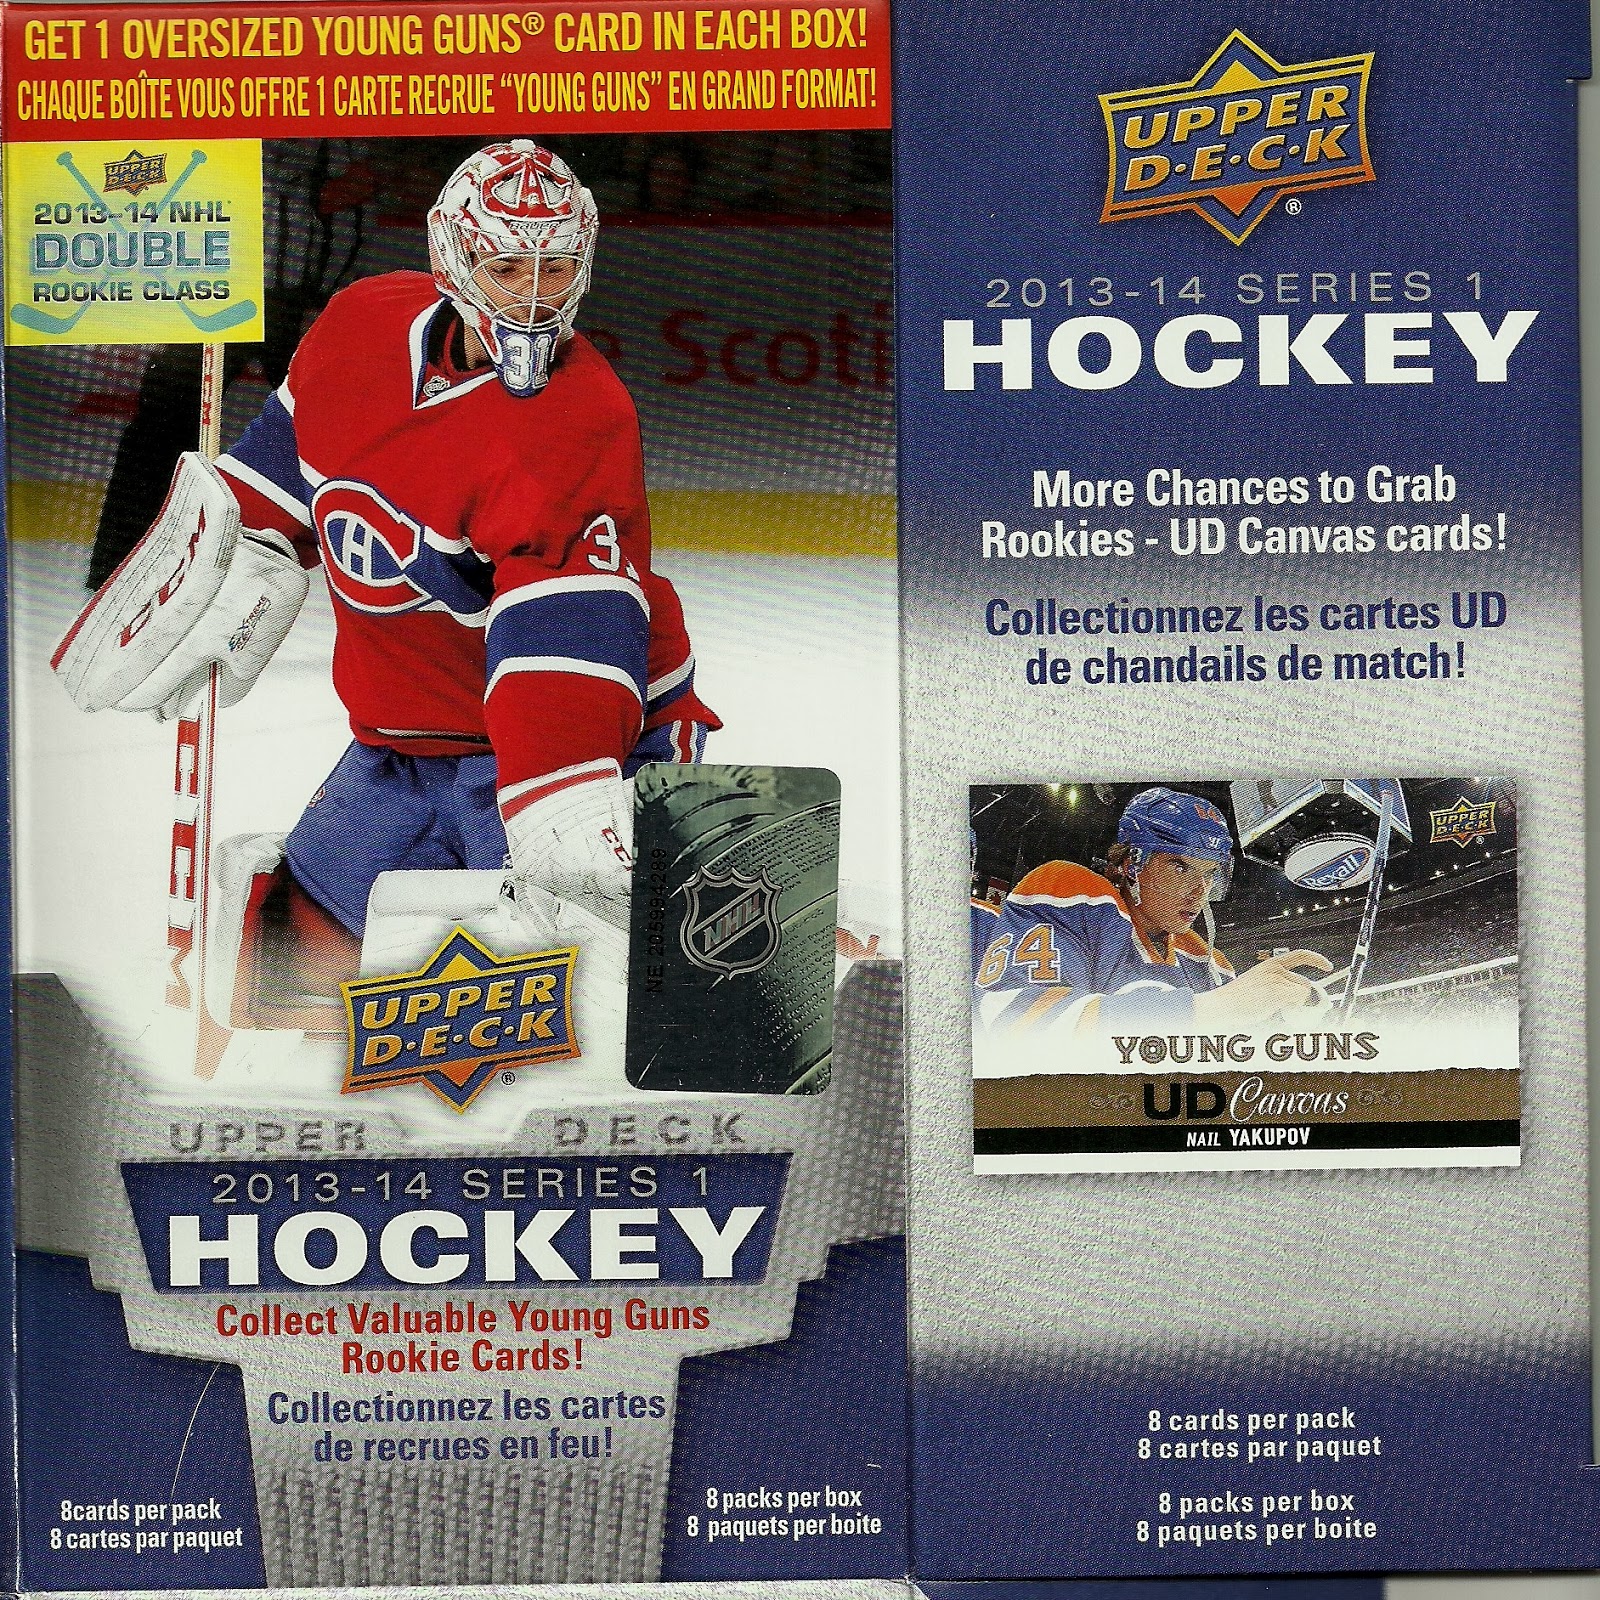 (23) 1994-95 Leaf Quebec Nordiques (23 Card Complete Team Set) See Scans!